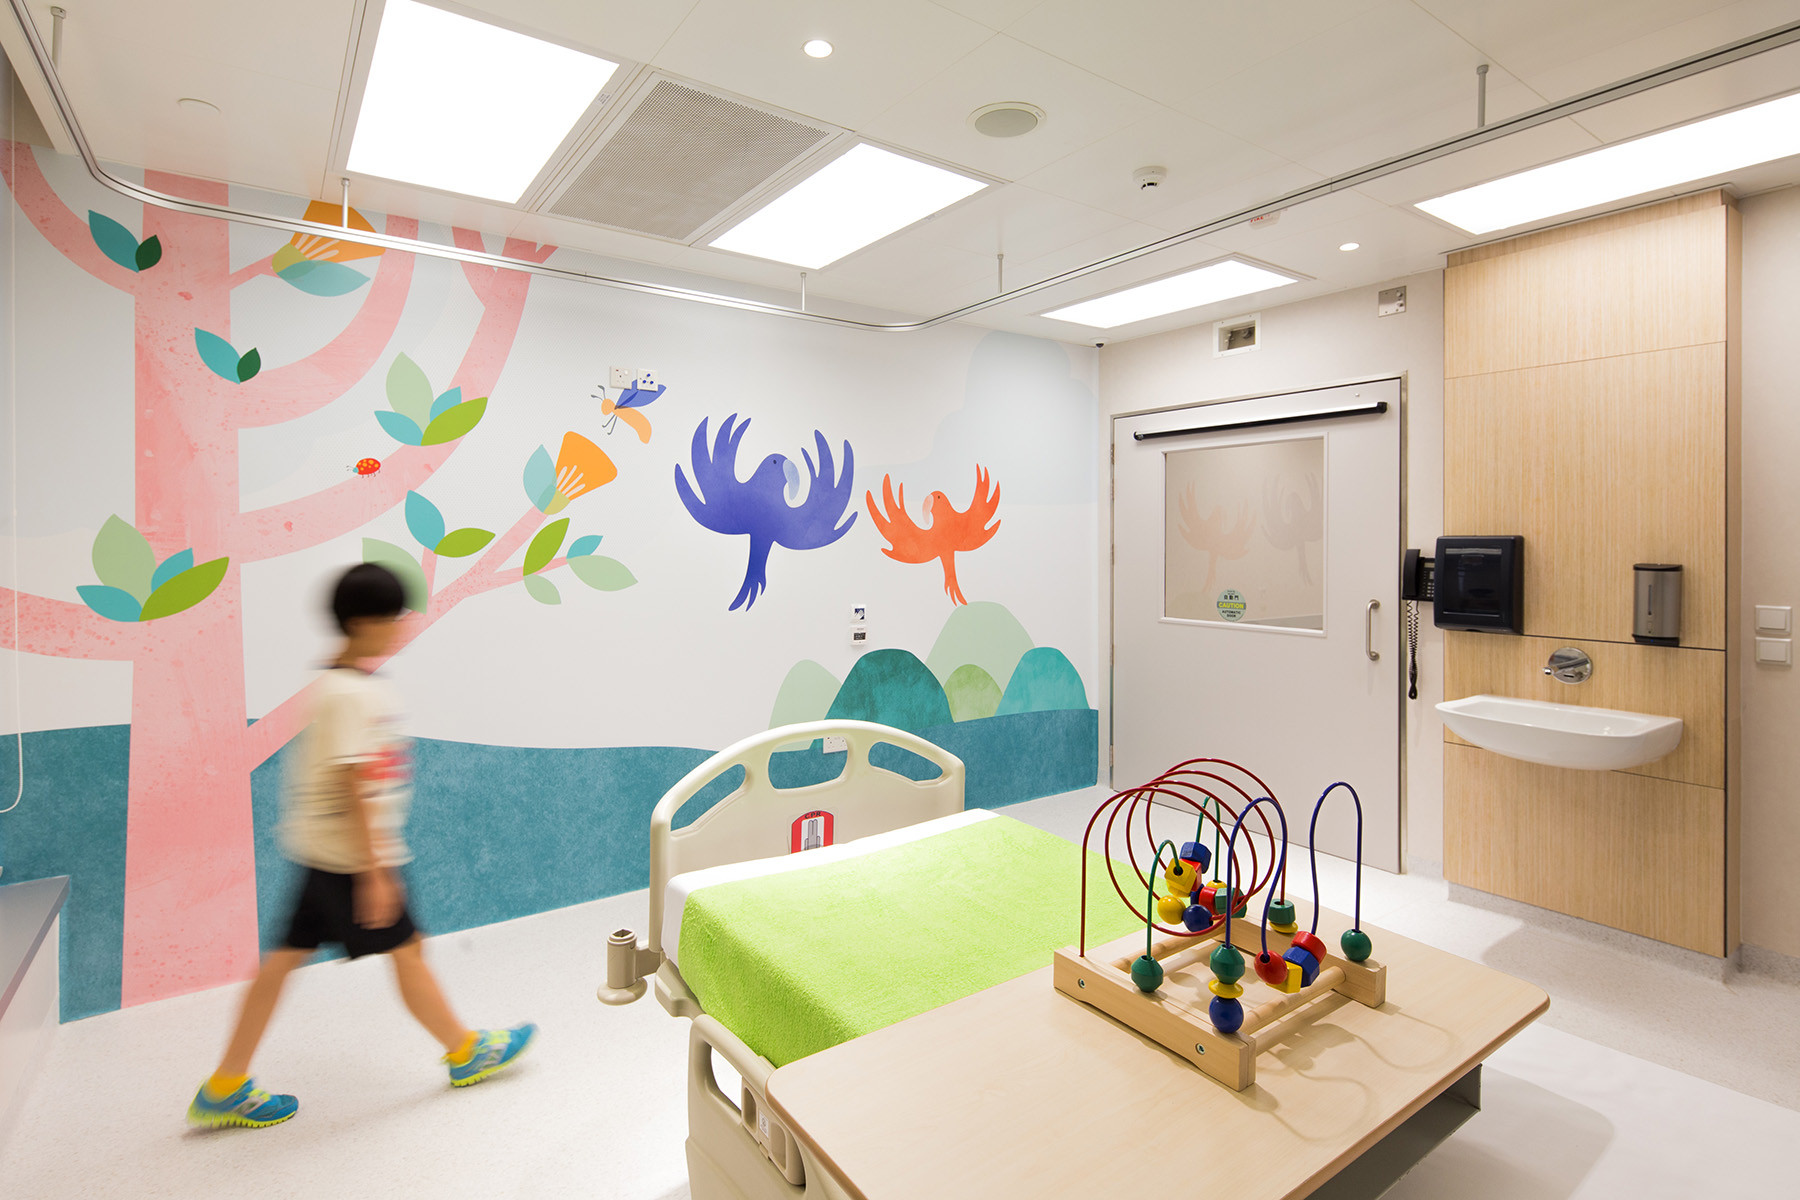 Hong Kong Children's Hospital